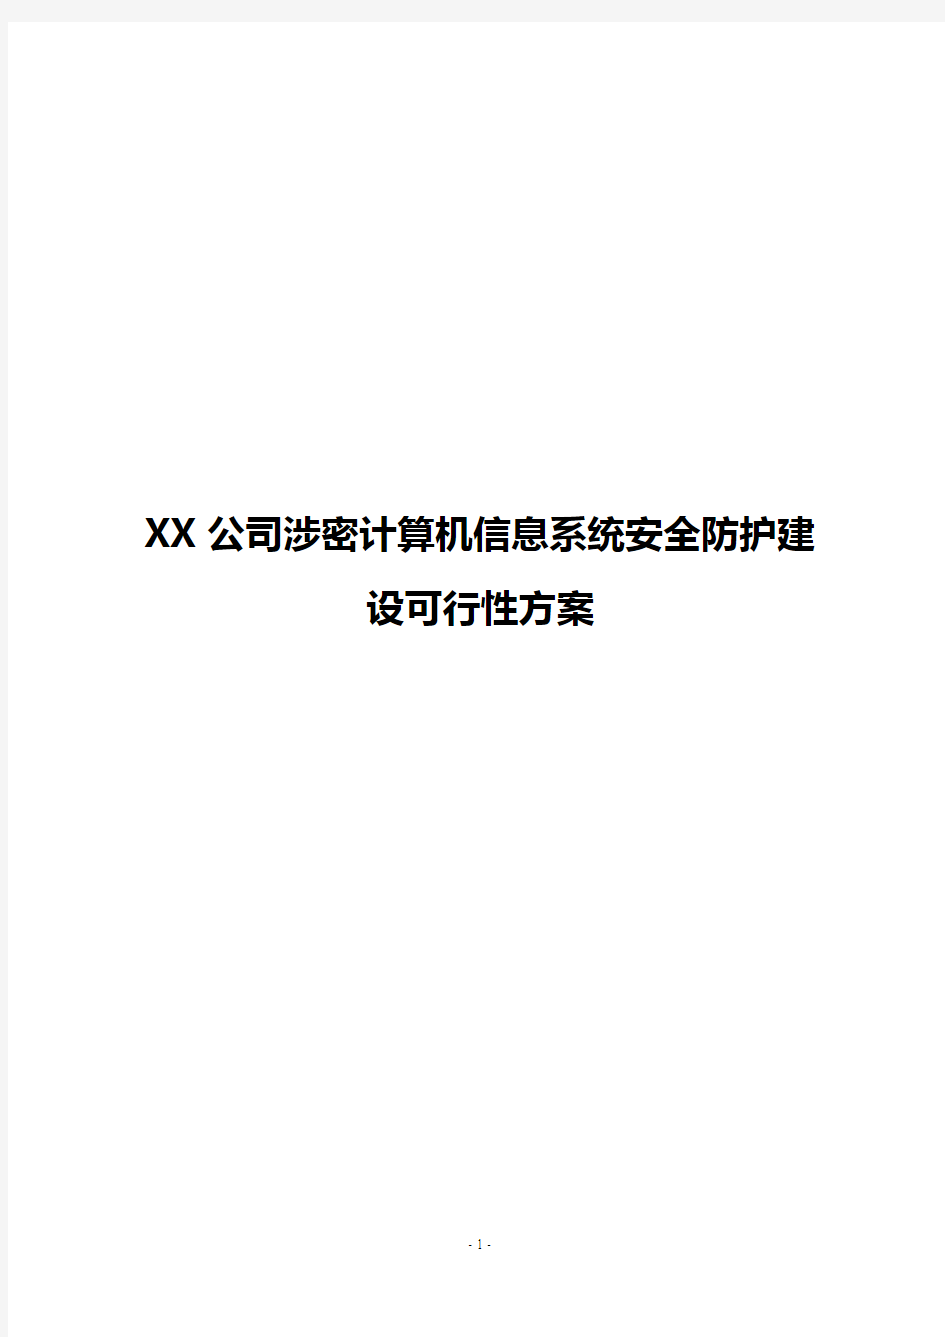 【精选】XX公司涉密计算机信息系统安全防护建设可行性方案